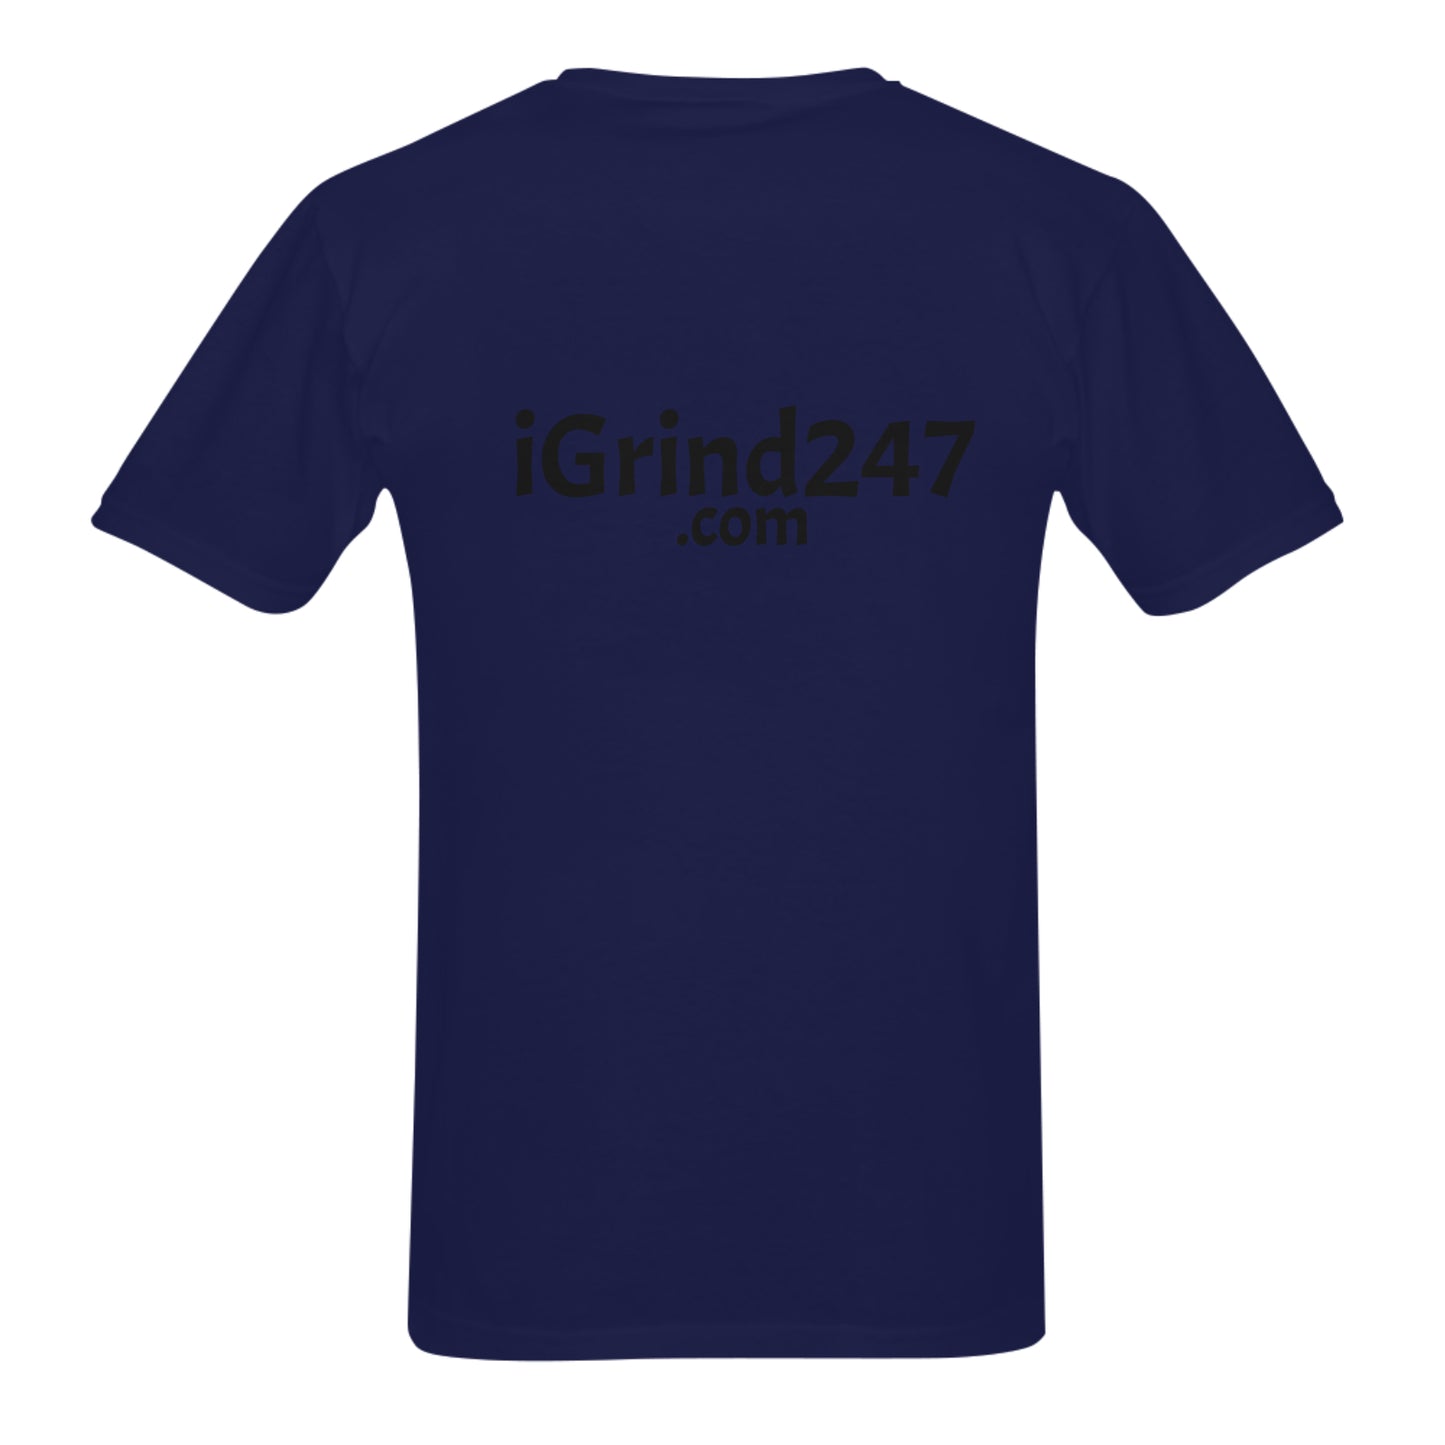 Men's T-Shirt iGrind247